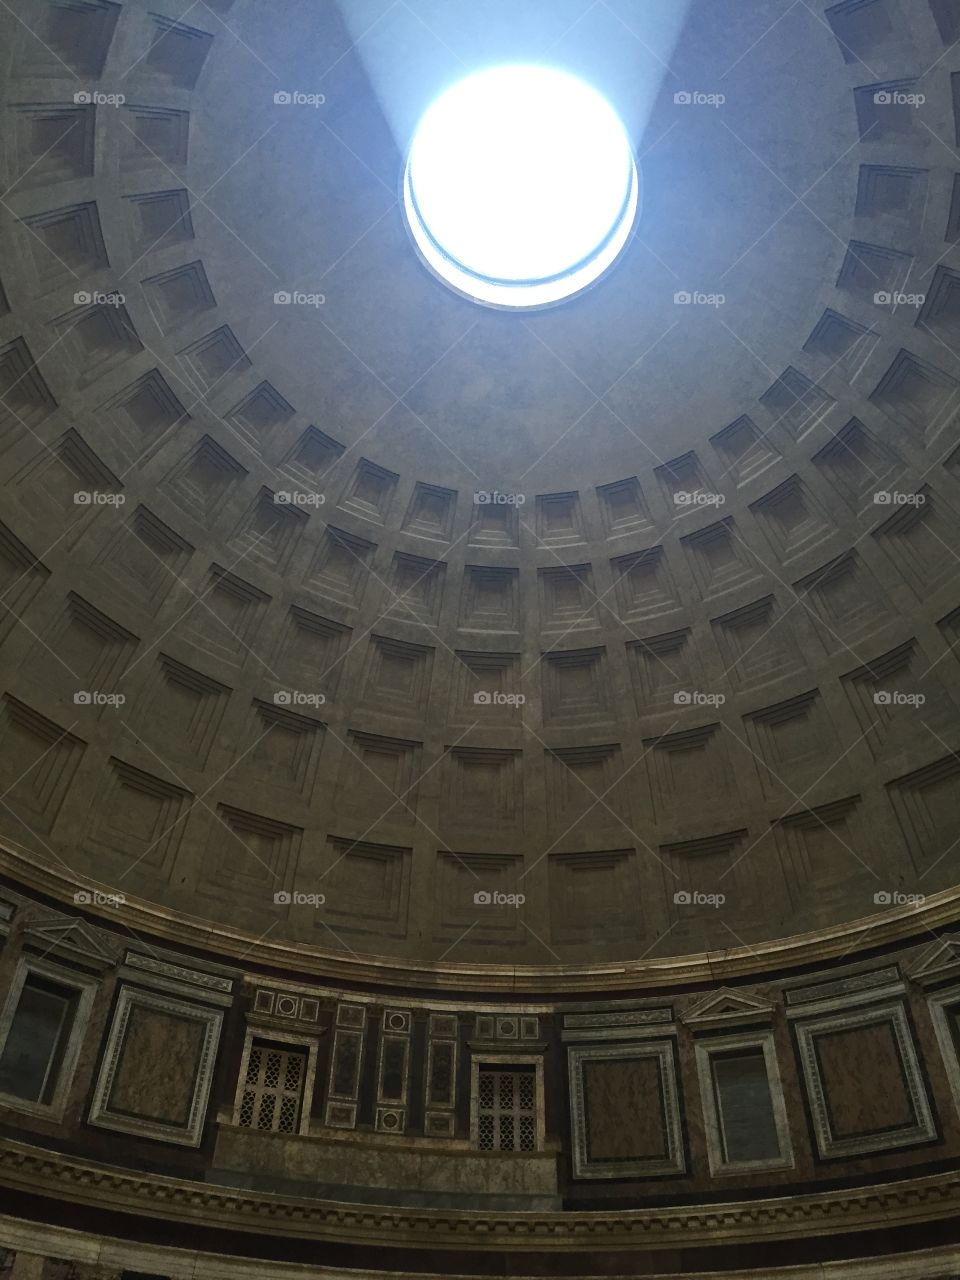 Pantheon
